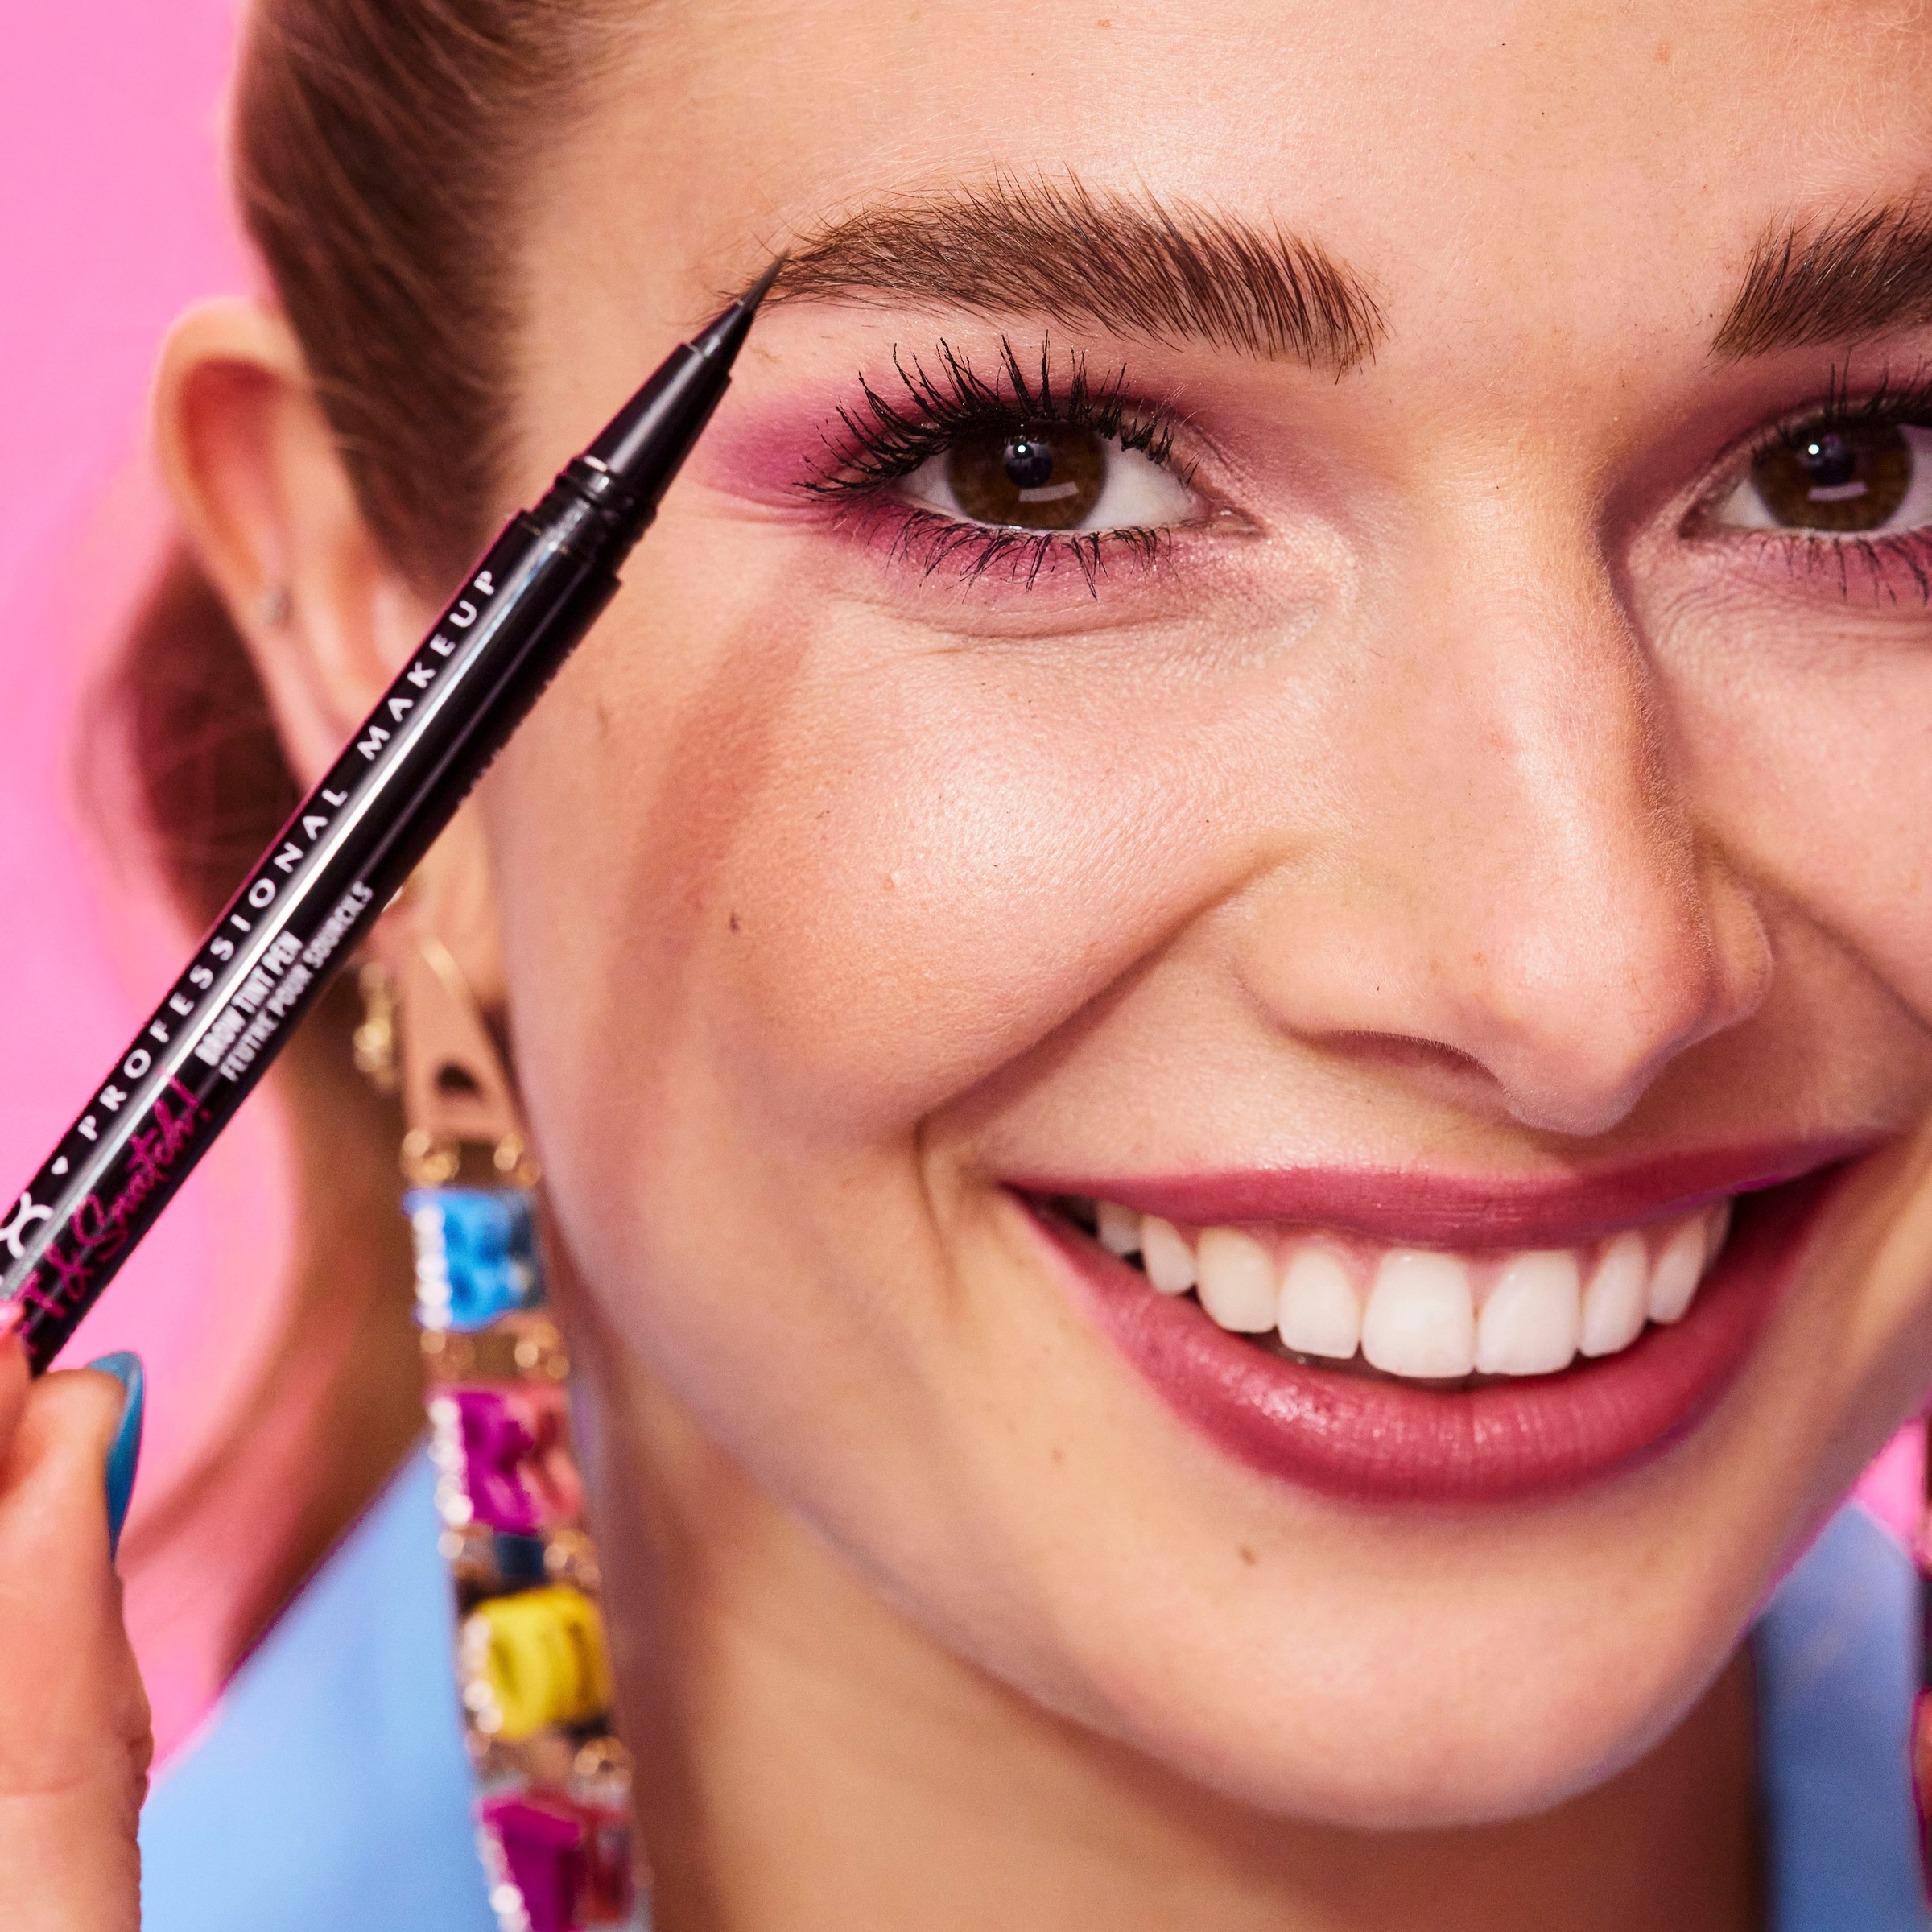 NYX Augenbrauen-Stift »Professional kaufen Pen« Brow online UNIVERSAL & Lift Makeup Tint | Snatch